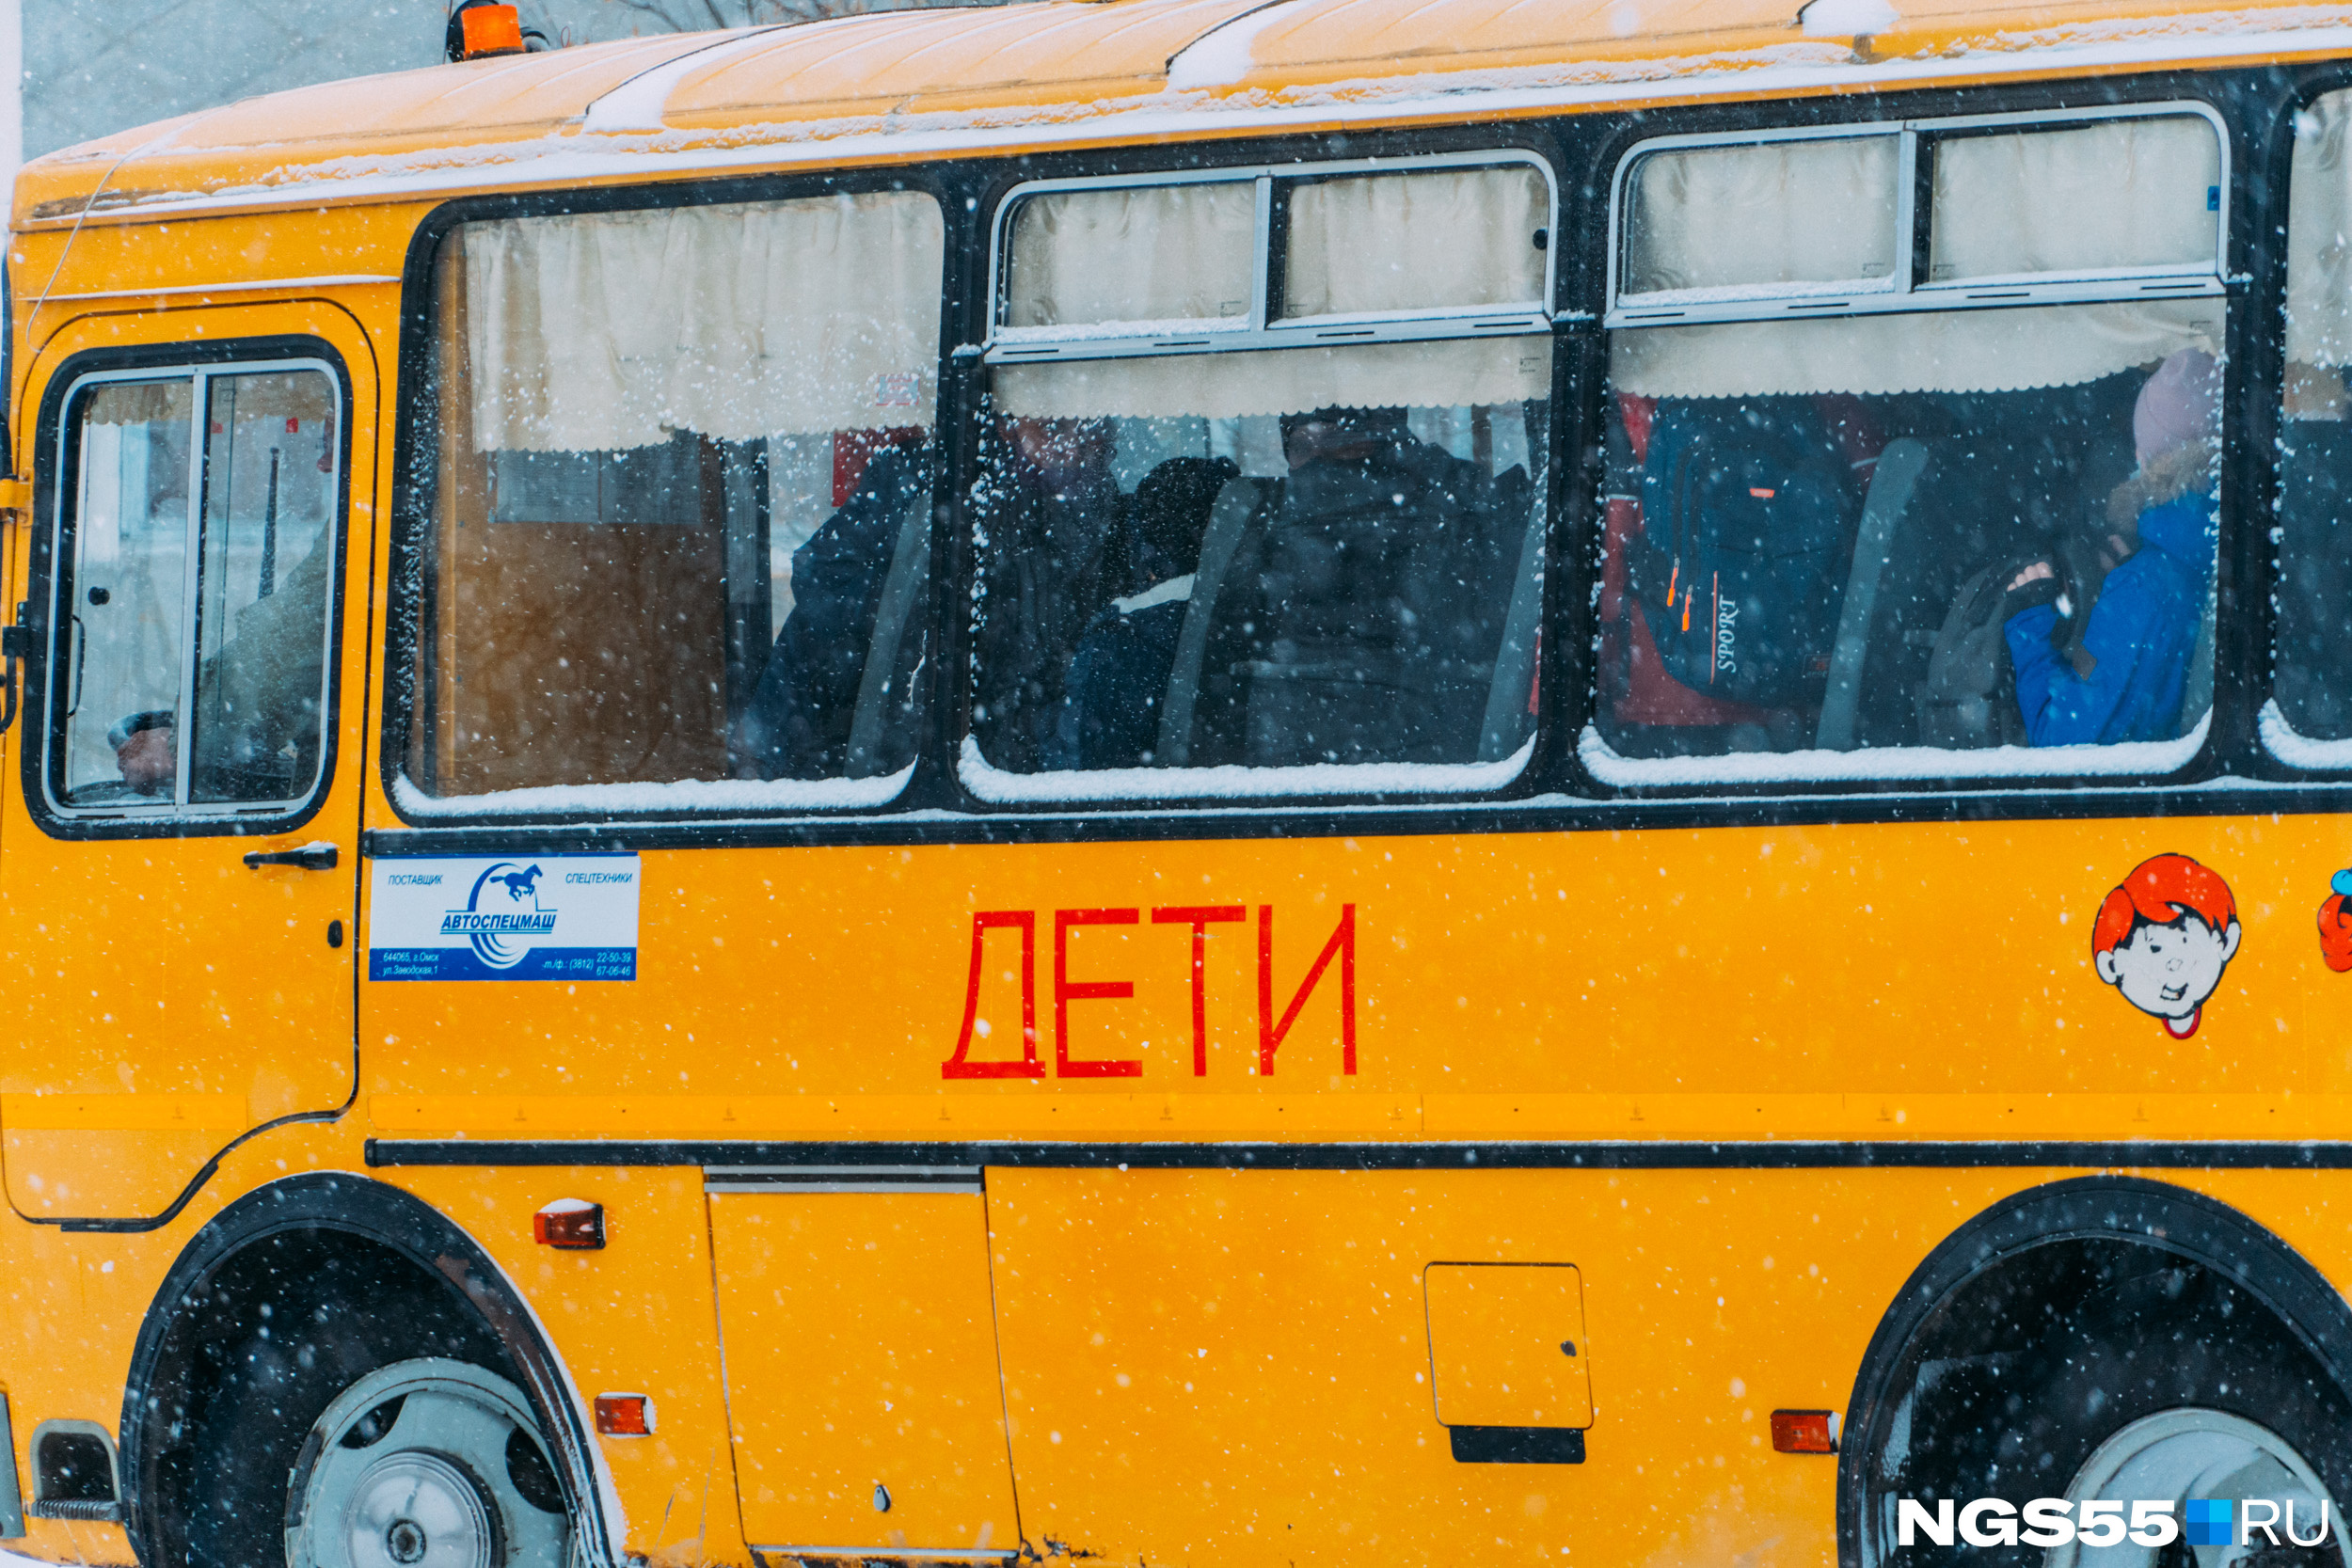 Учитель объяснила, почему выгнала пятиклассника из школьного автобуса в Чите